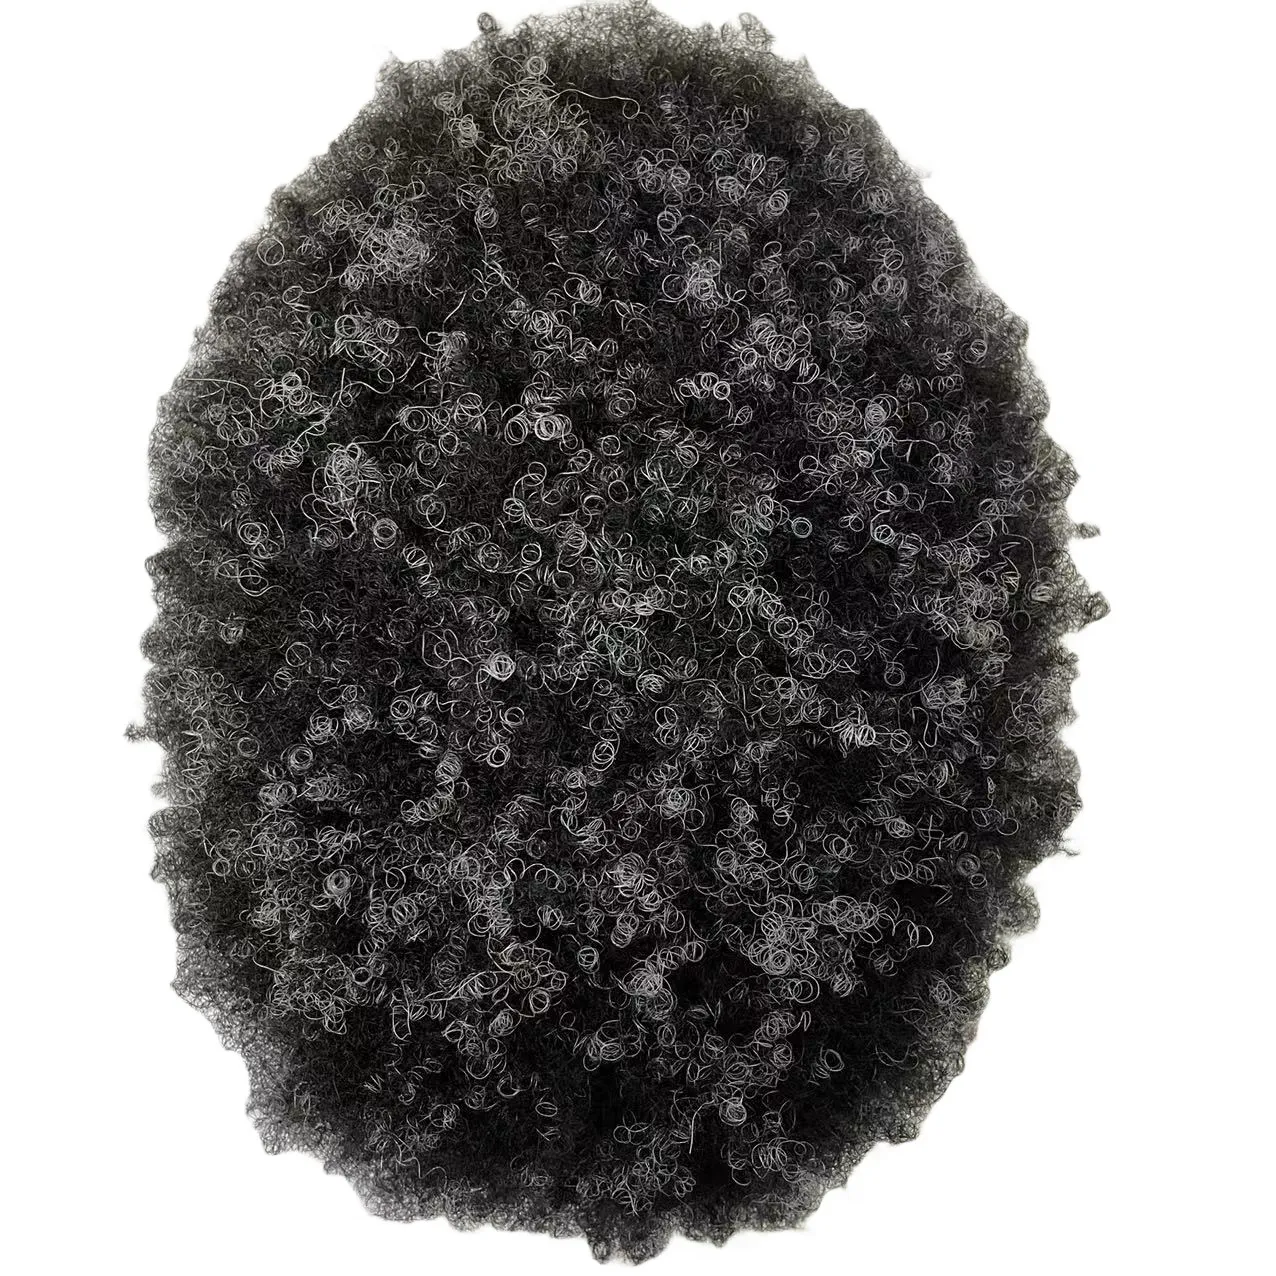 Кусочек человеческих волос индийской девственницы 4 мм, афро-парик # 1, Серый, полностью кружевной, для чернокожего мужчины